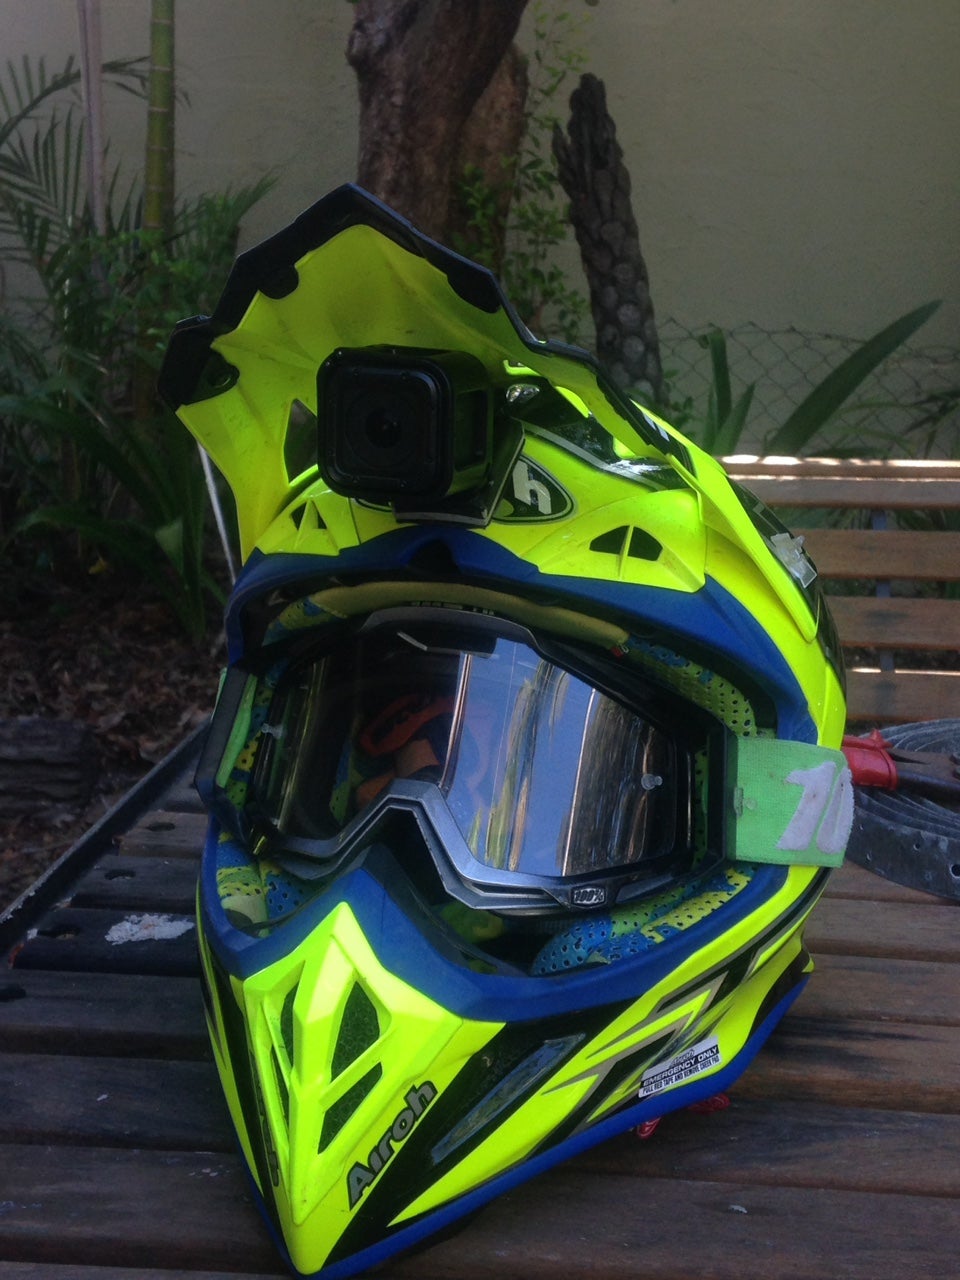 best gopro mount for dirt bike helmet